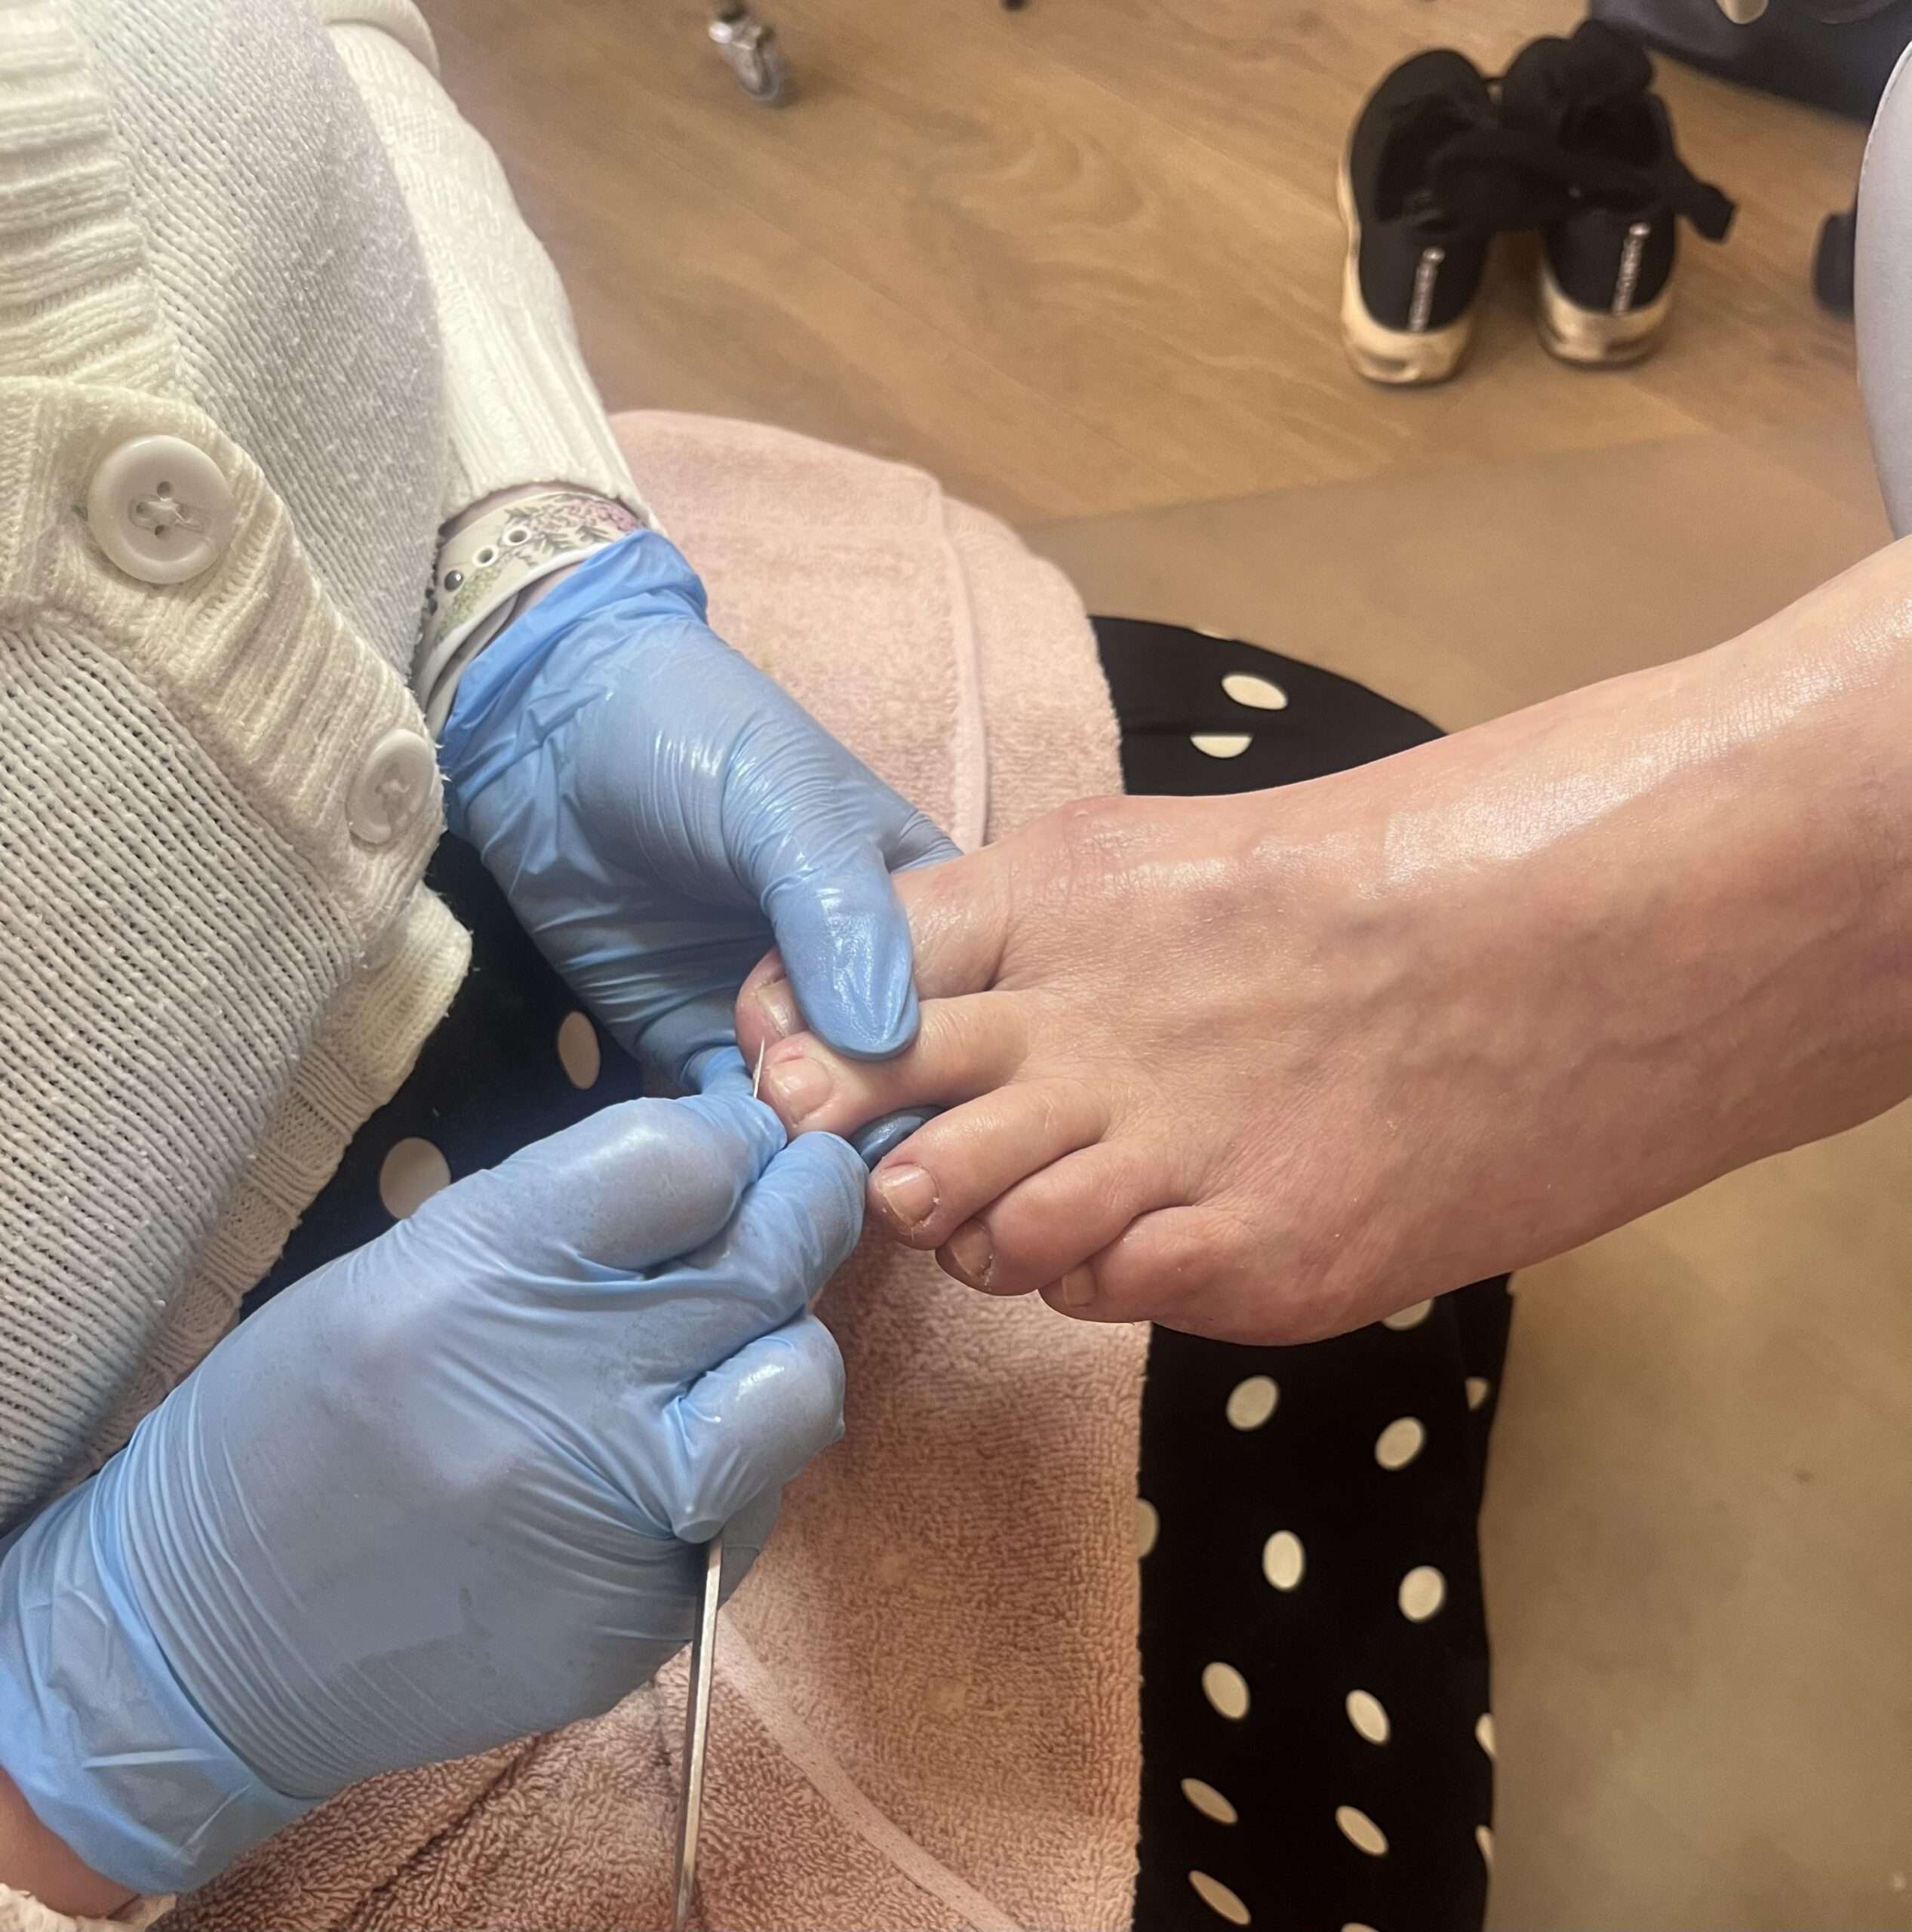 Behandling af negle på fødder i Frederiksværk v ed fodbehnadling af fodplejer i fodplejeklinik